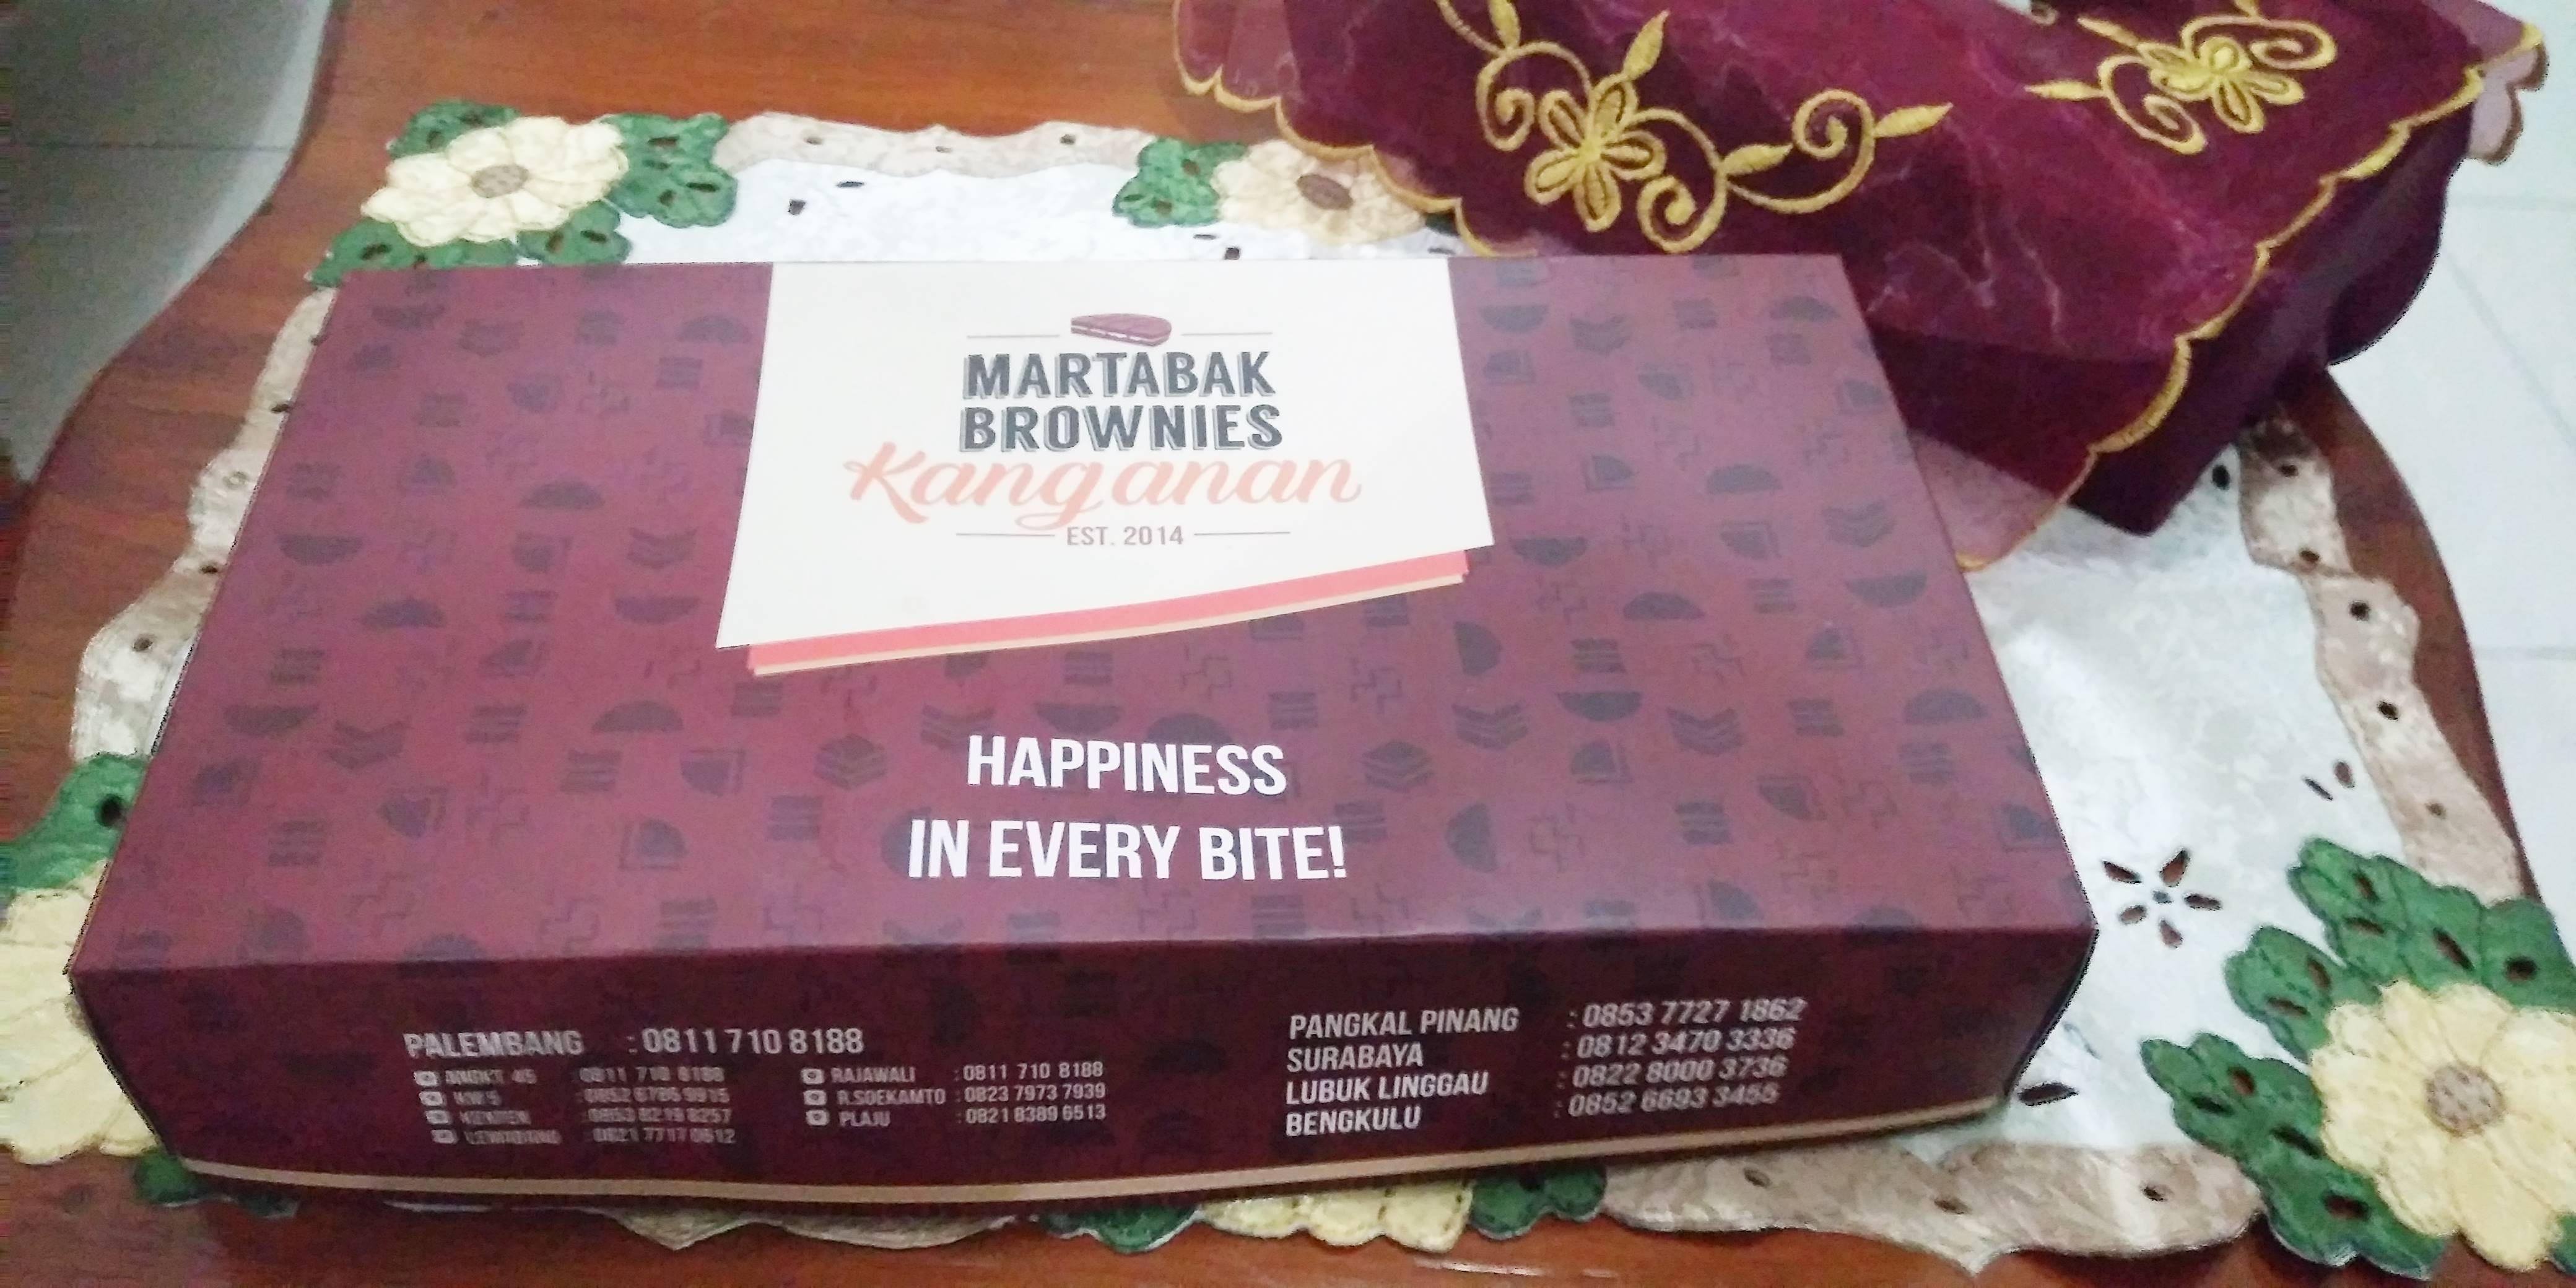 Sensasi Brownies dalam Martabak Manis ala Kang Anan